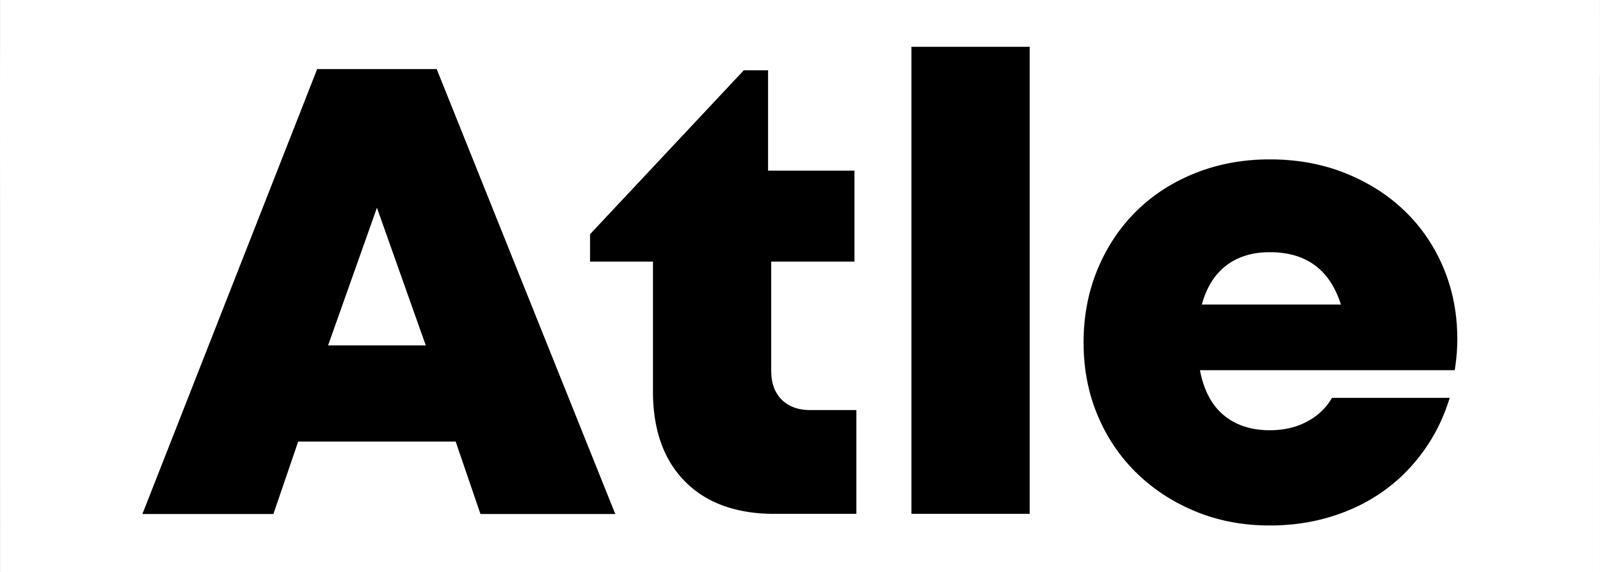 Логотип Atle®